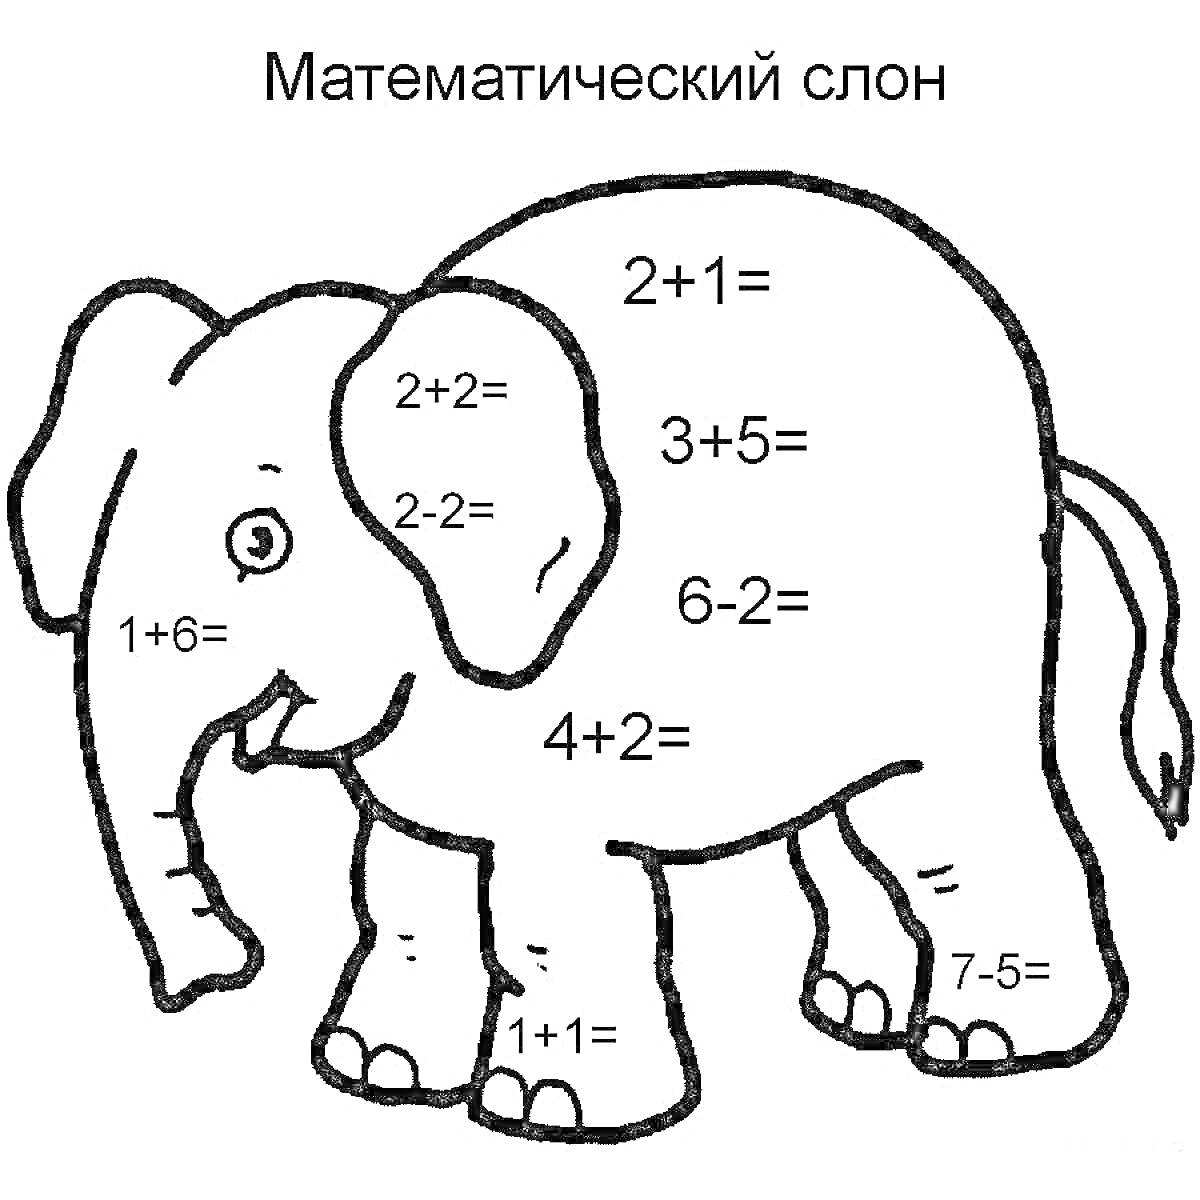 Математический слон с примерами арифметических задач (сложение и вычитание)